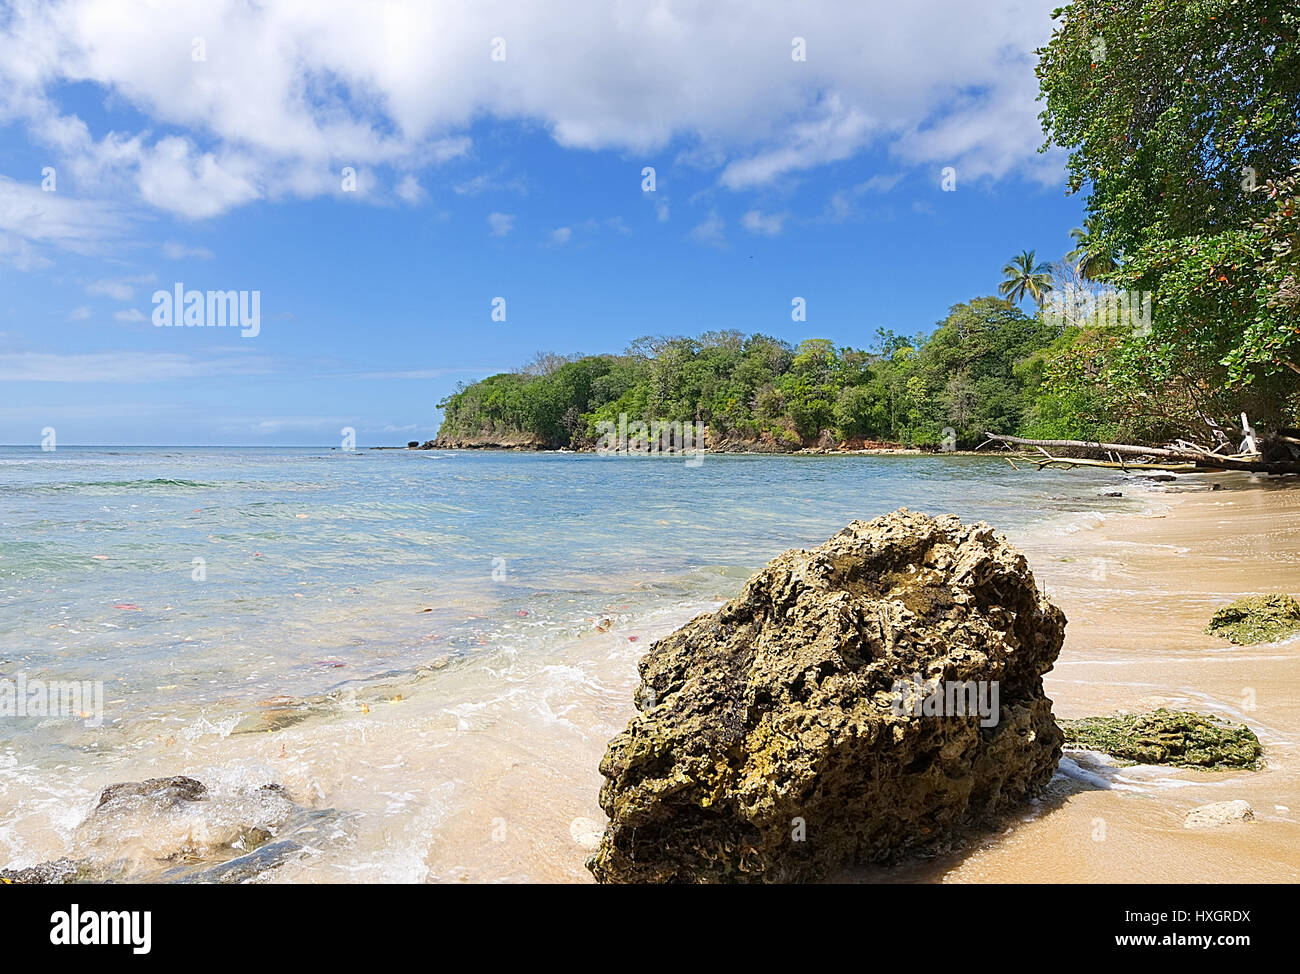 Repubblica di Trinidad e Tobago - isola di Tobago - Mt. Irvine bay - spiaggia tropicale del Mar dei Caraibi Foto Stock